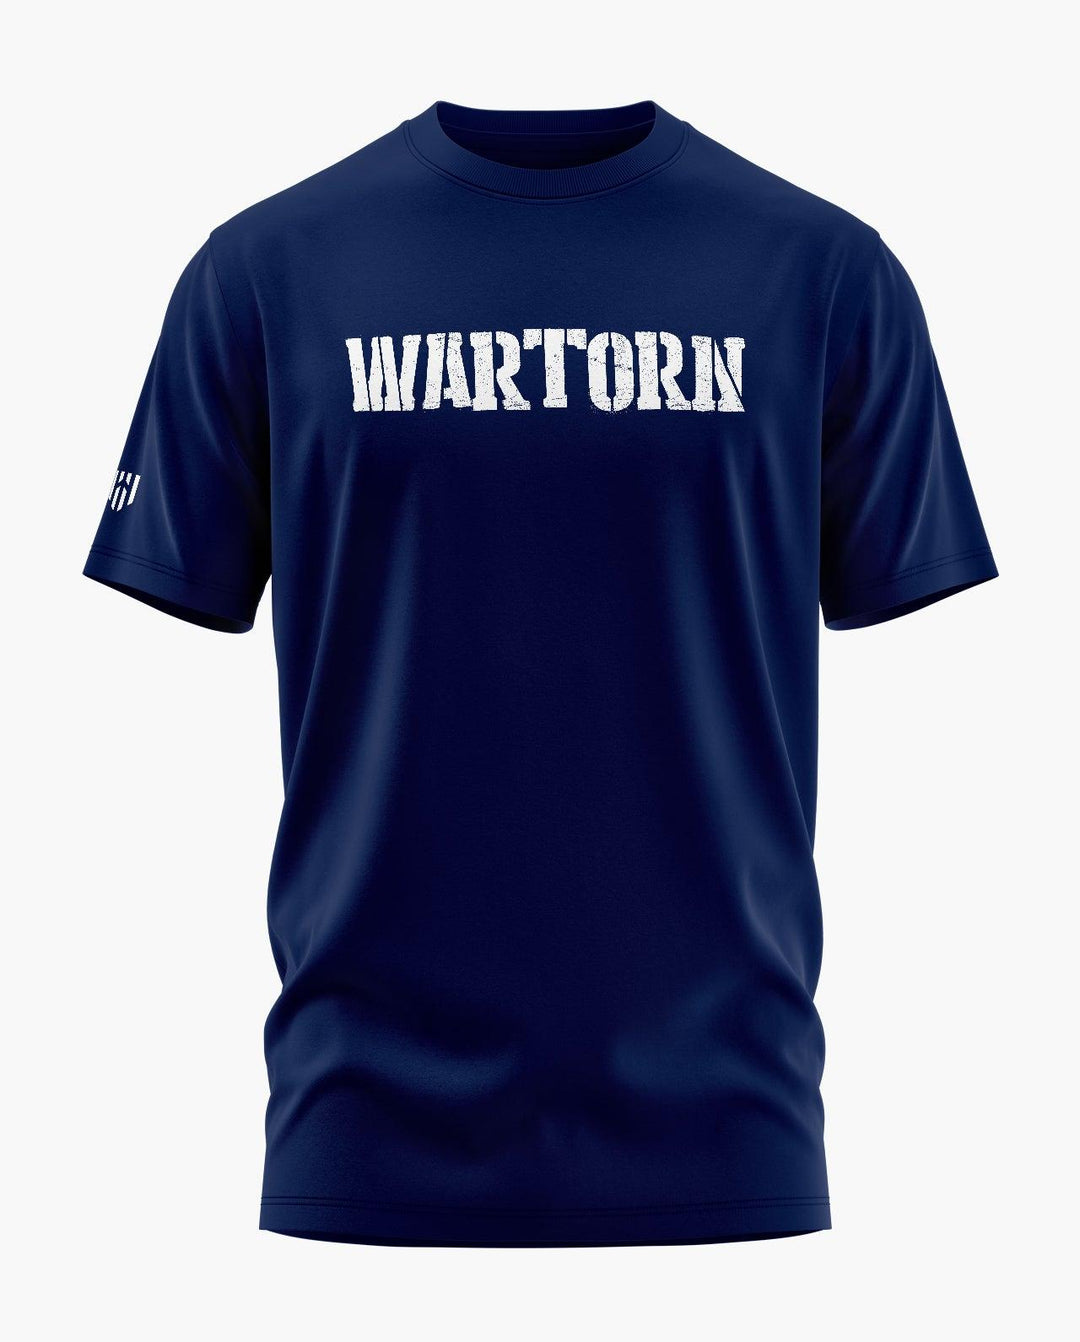 War Torn T-Shirt - Aero Armour